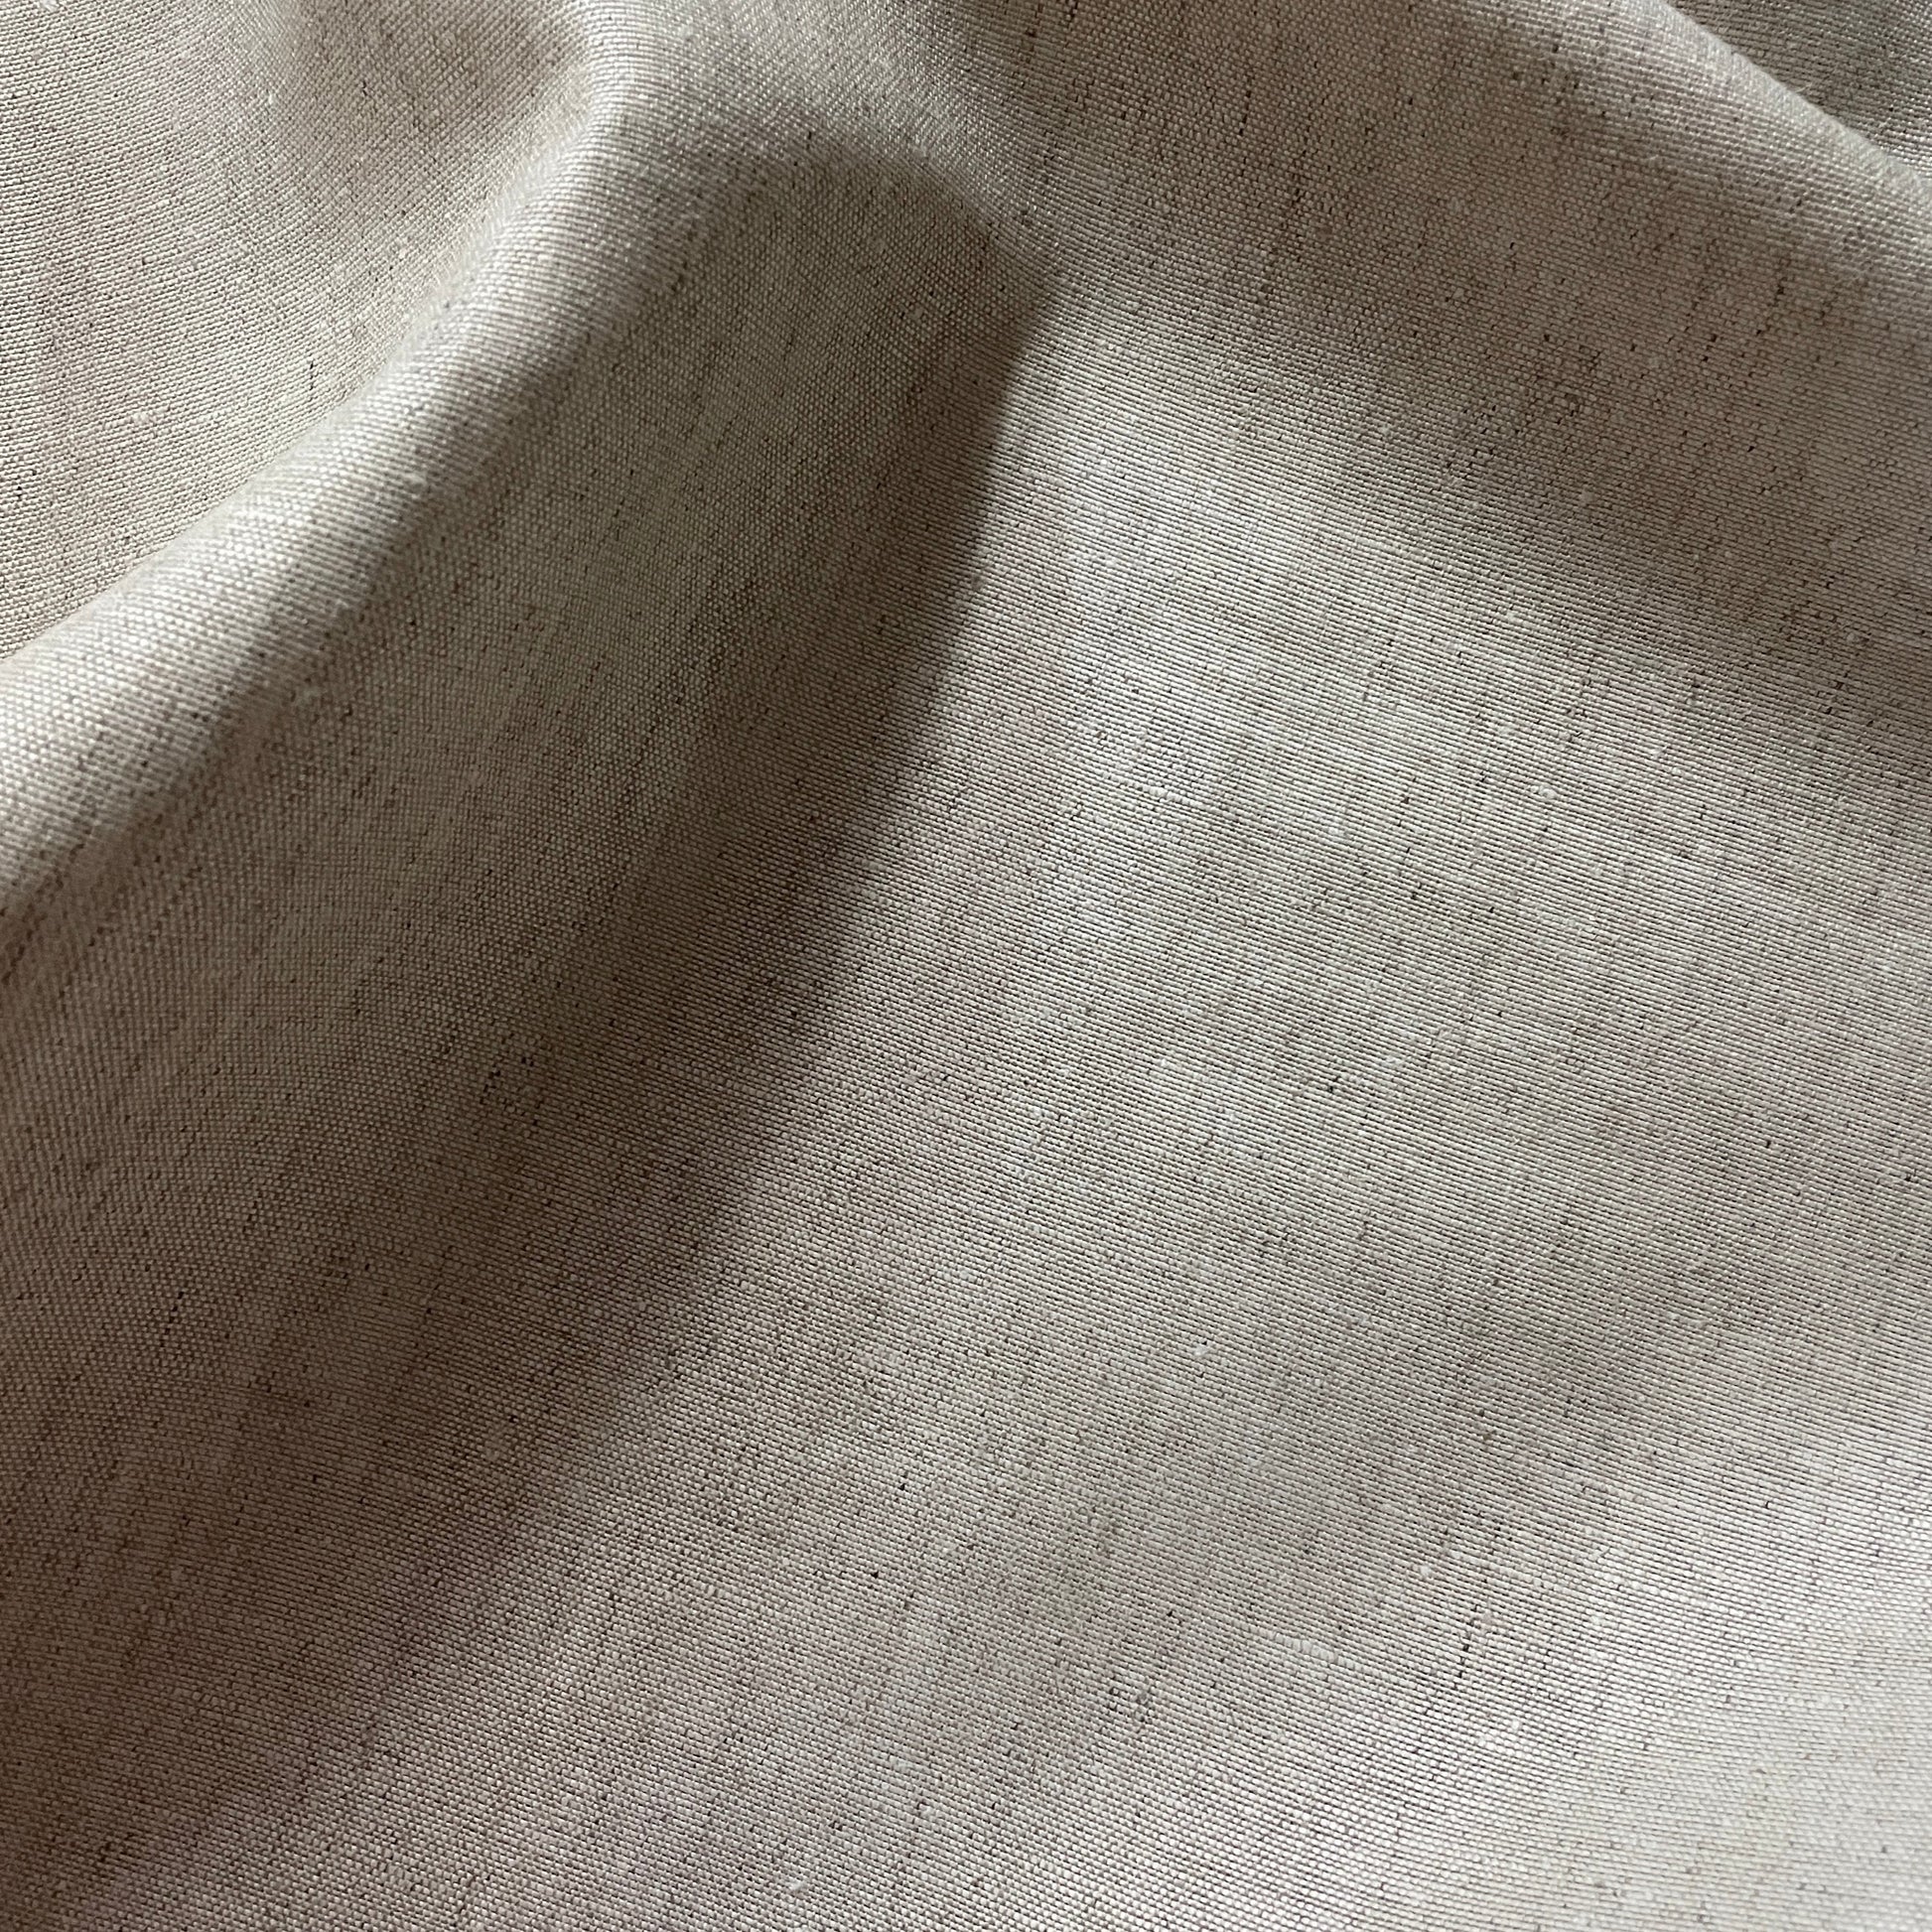 Organic Cotton Hemp Fabric at Rs 450/meter, Anaiyur Post, Sivakasi